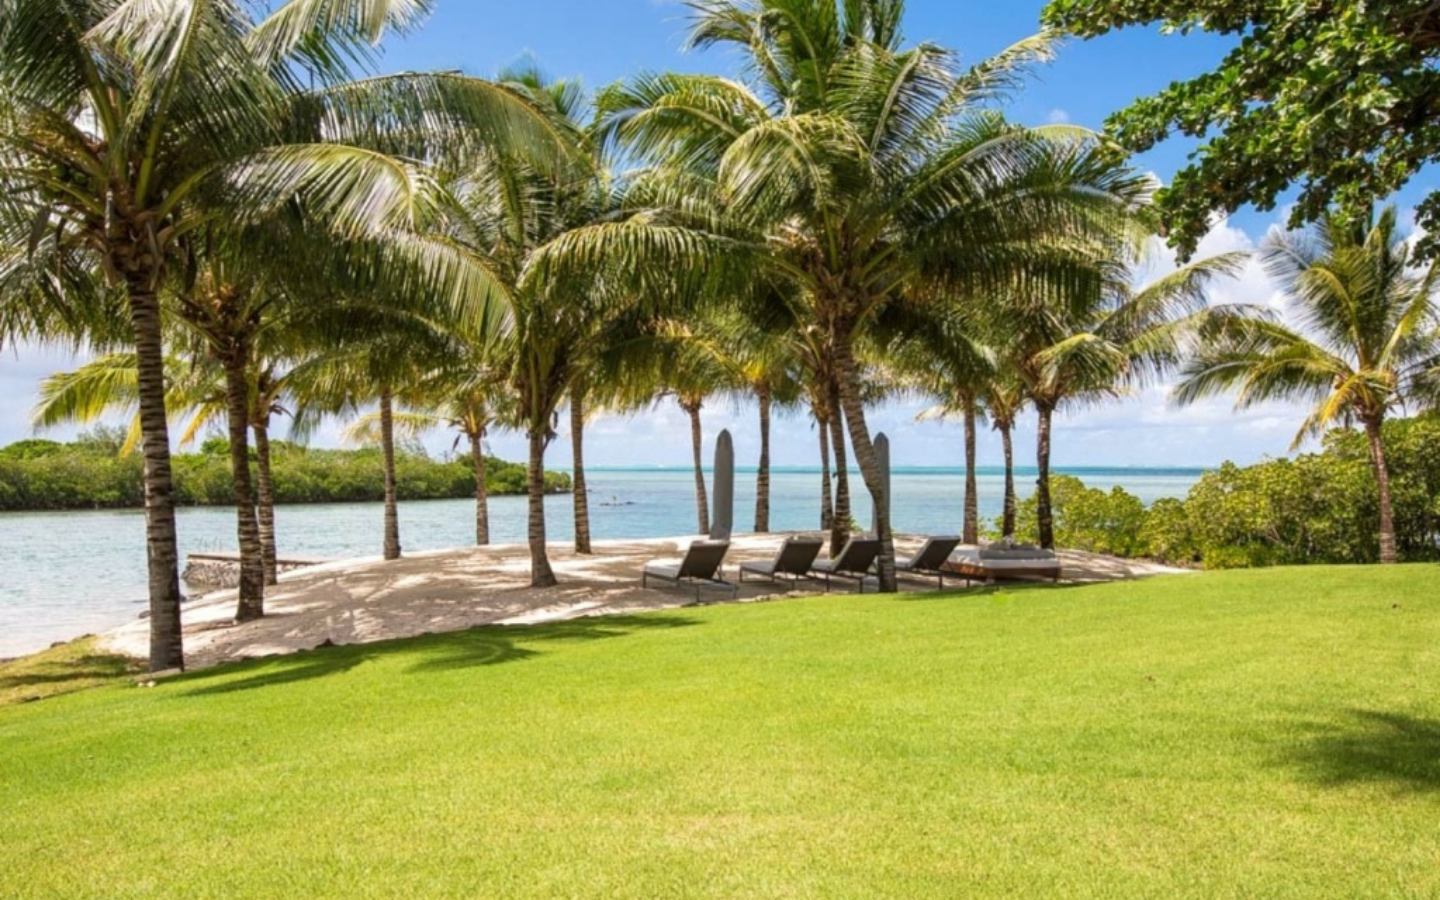 Villa à vendre, île Maurice - Plage privé bordant les eaux turquoise